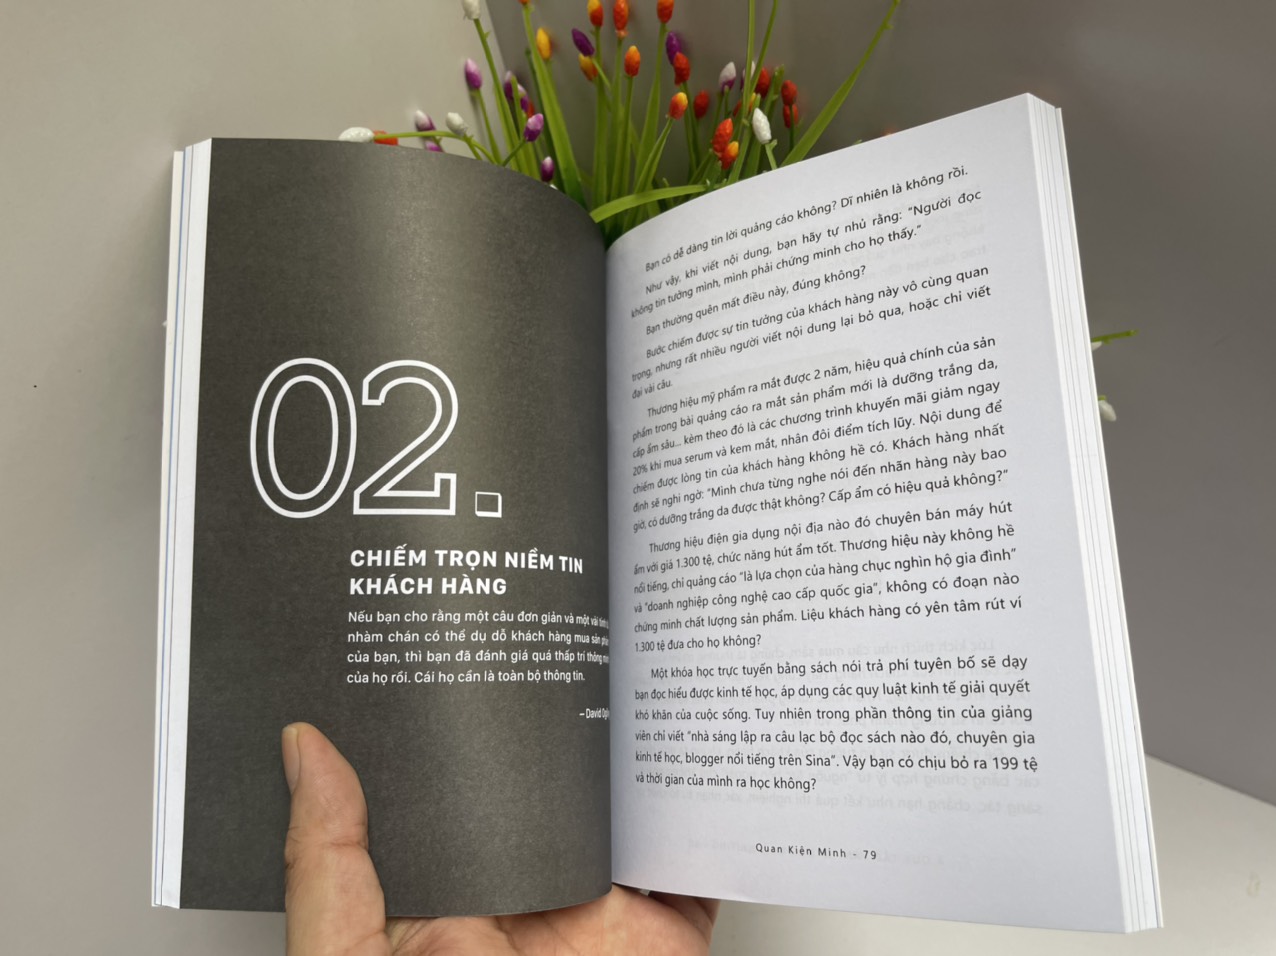 4 QUY TẮC VẰNG TRONG COPYWRITING – Quan Kiện Minh – Hàn Vũ Phi dịch – Being Books – AZ VIETNAM – NXB Thế Giới (Bìa mềm)